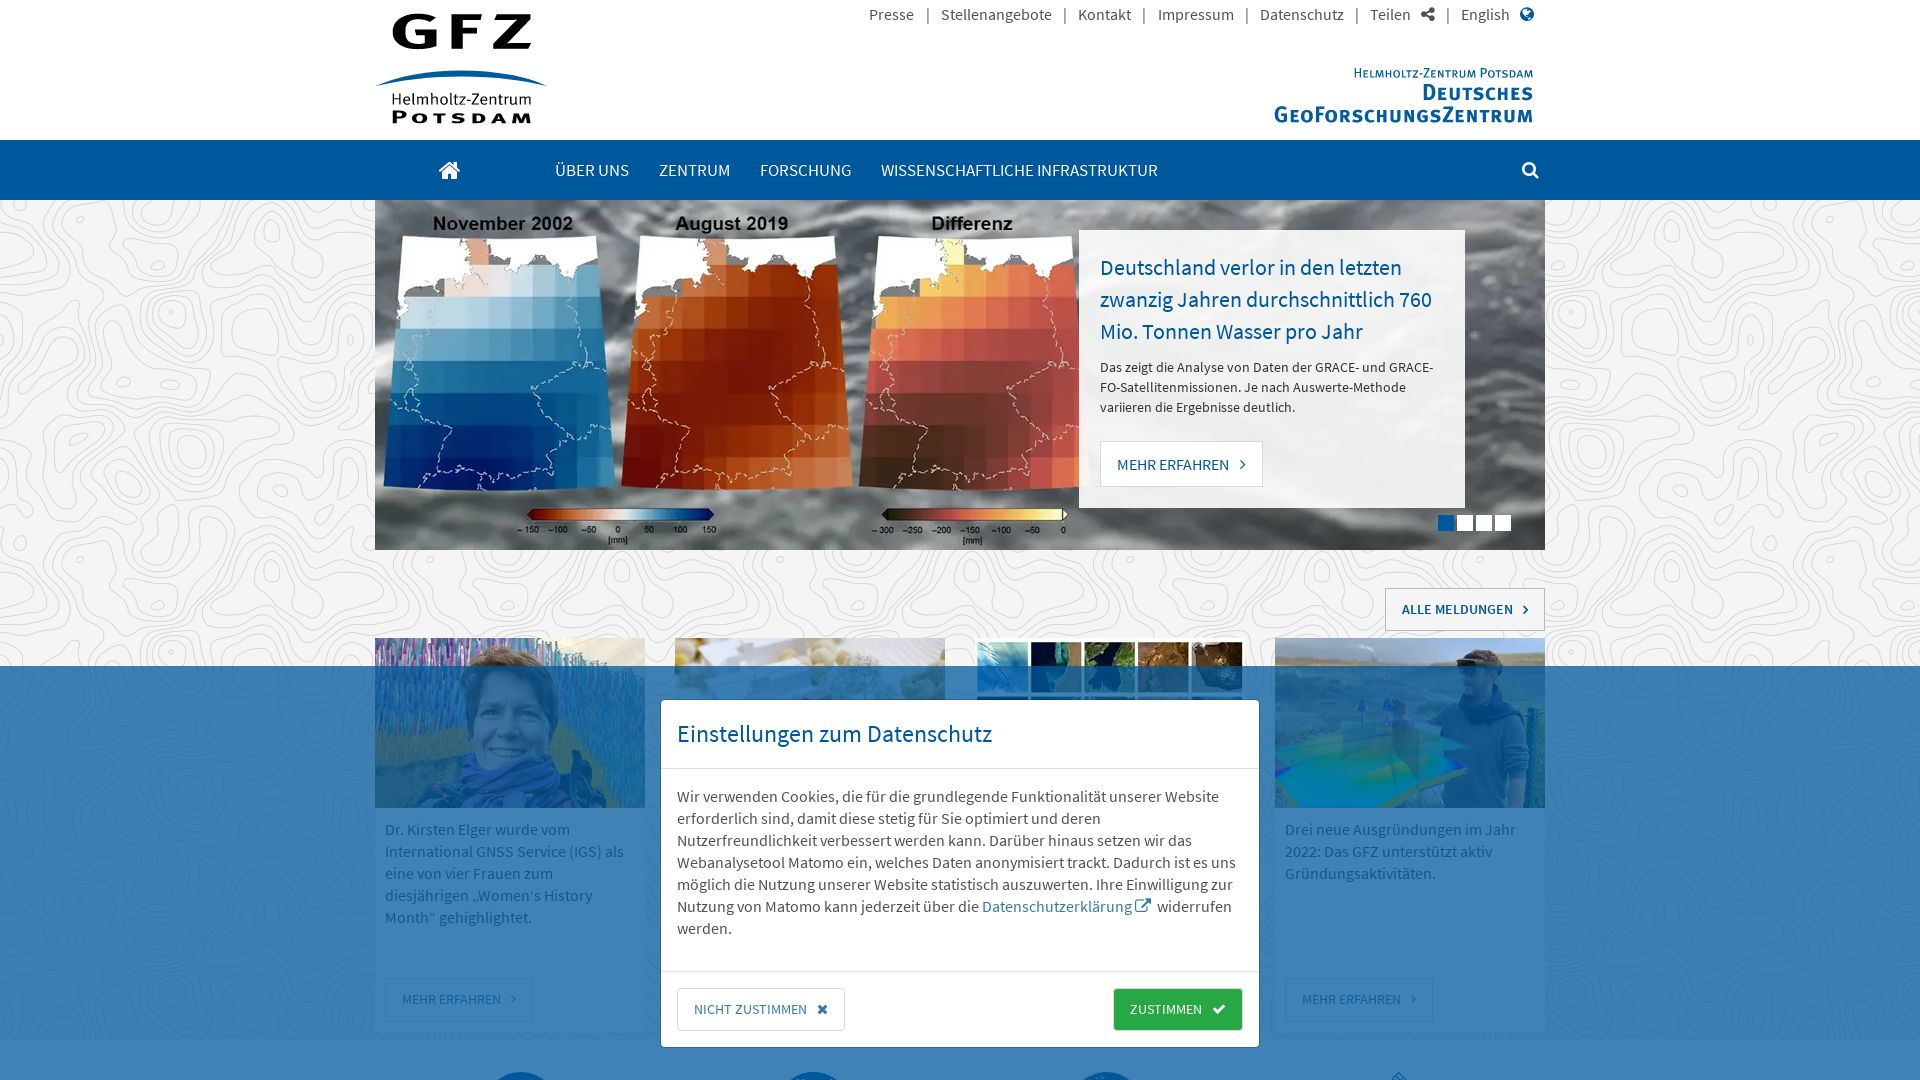 Website status gfz-potsdam.de is   ONLINE